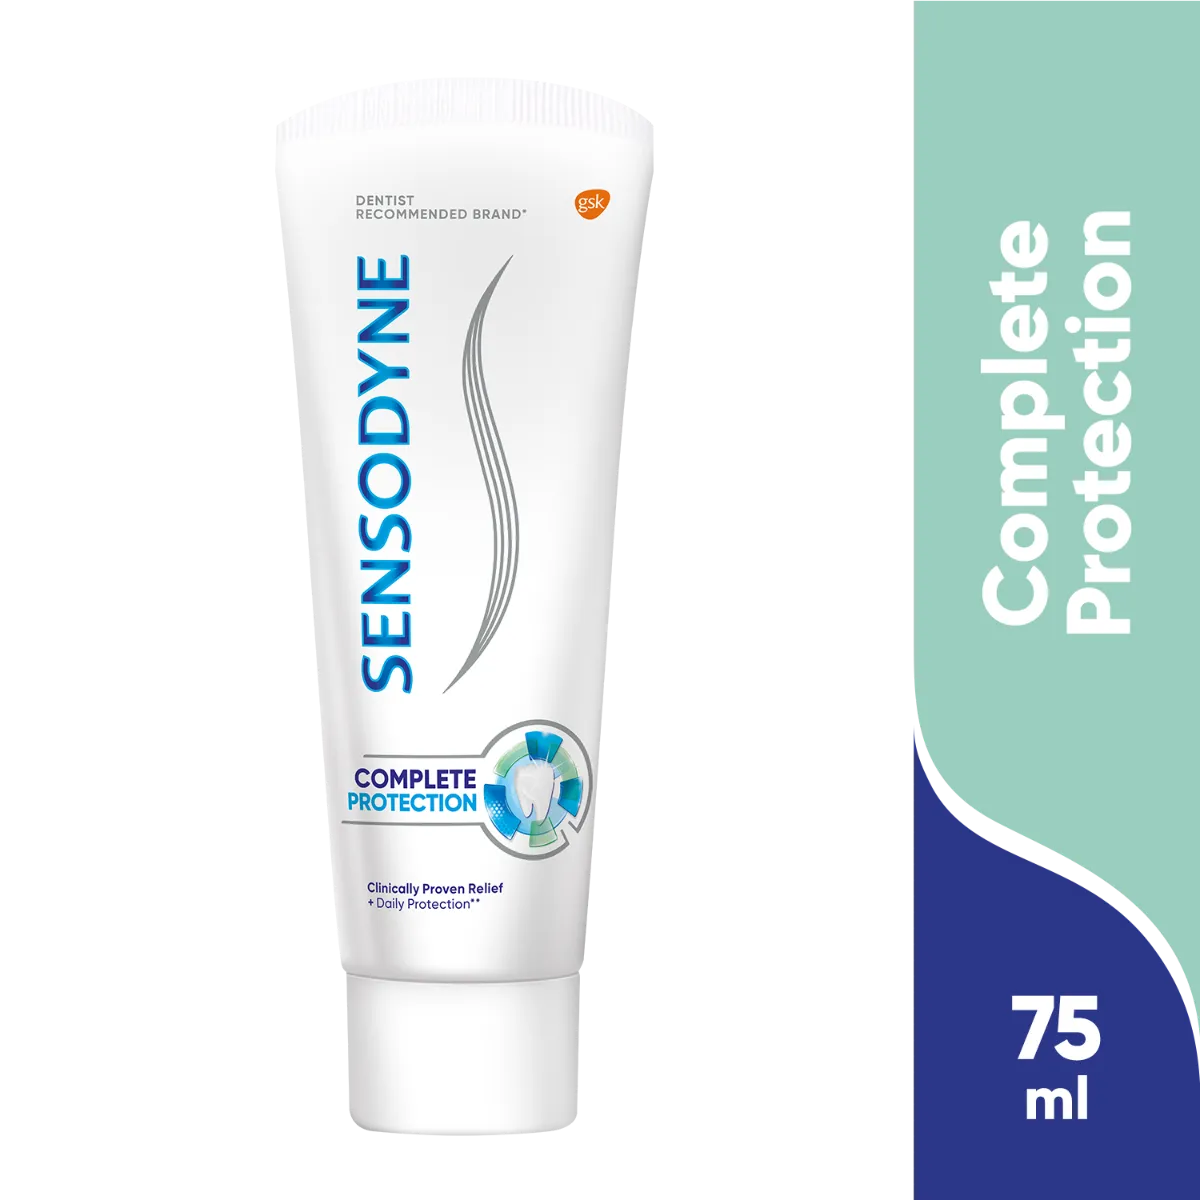 Sensodyne Complete Protection, pasta do zębów, 75 ml